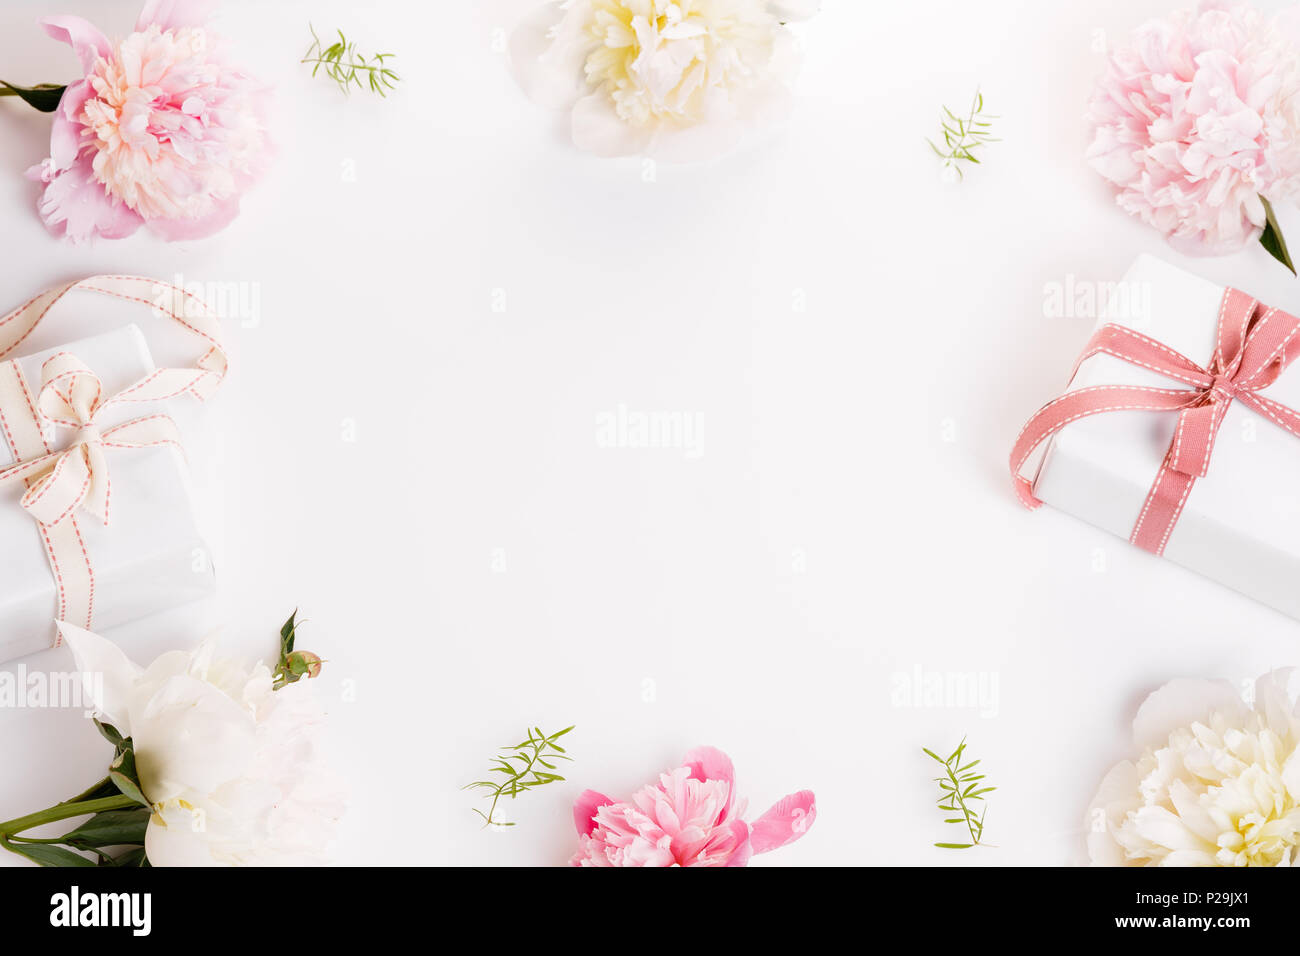 Festosa composizione floreale in bianco sullo sfondo di legno. Overh Foto Stock